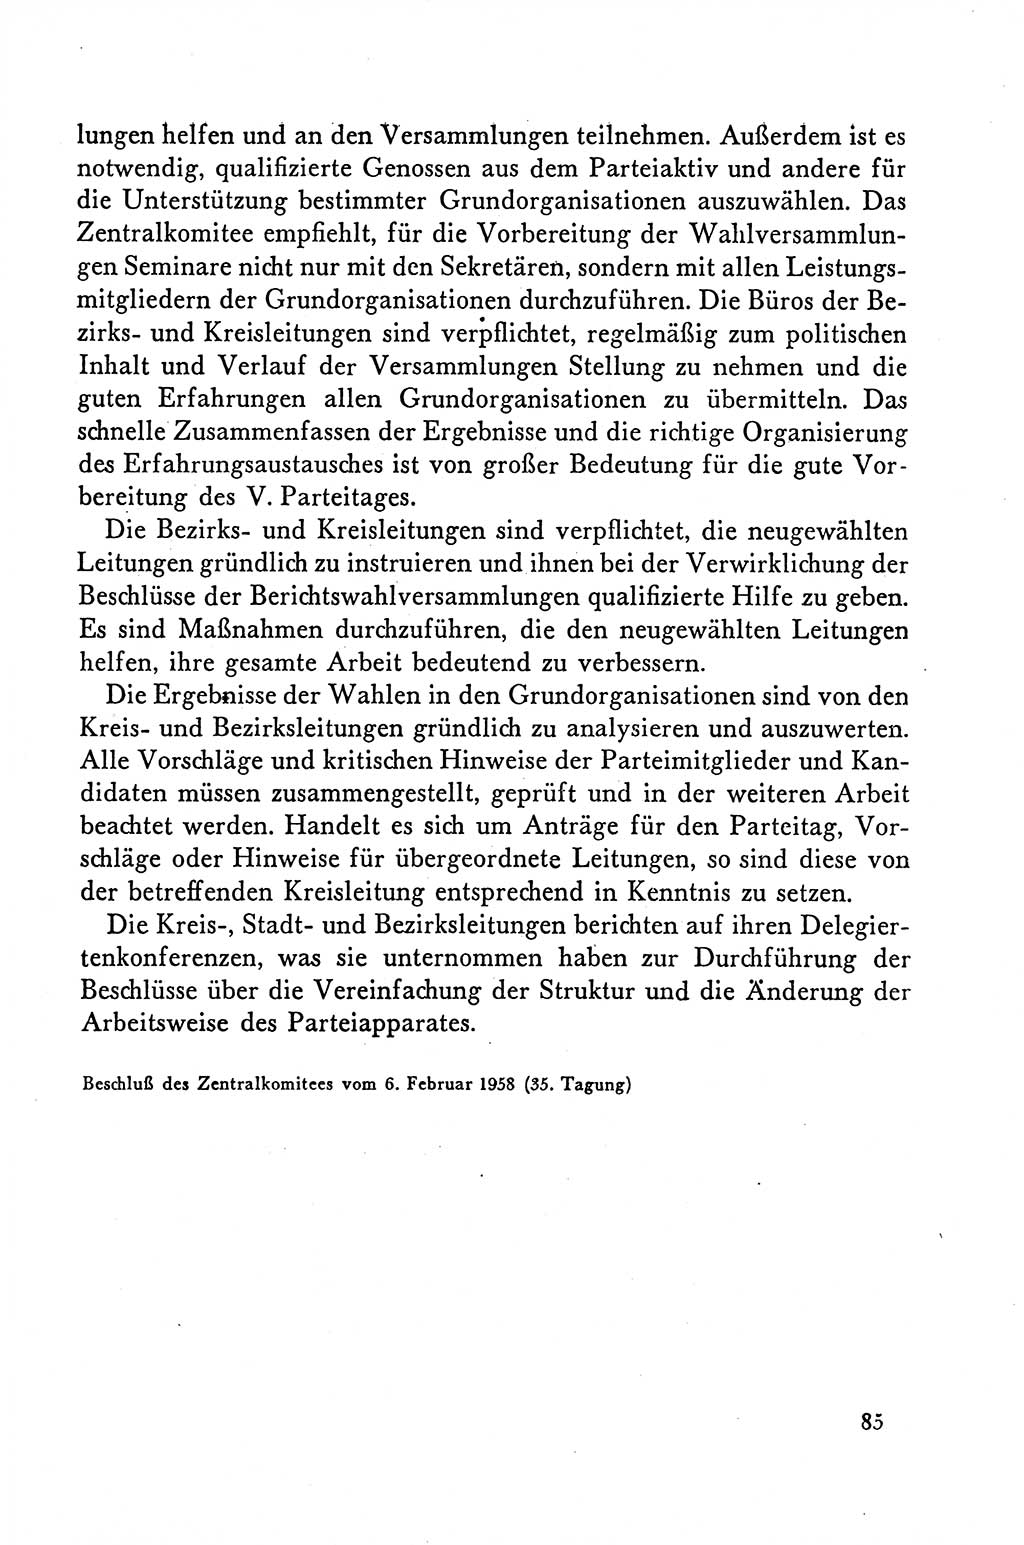 Dokumente der Sozialistischen Einheitspartei Deutschlands (SED) [Deutsche Demokratische Republik (DDR)] 1958-1959, Seite 85 (Dok. SED DDR 1958-1959, S. 85)